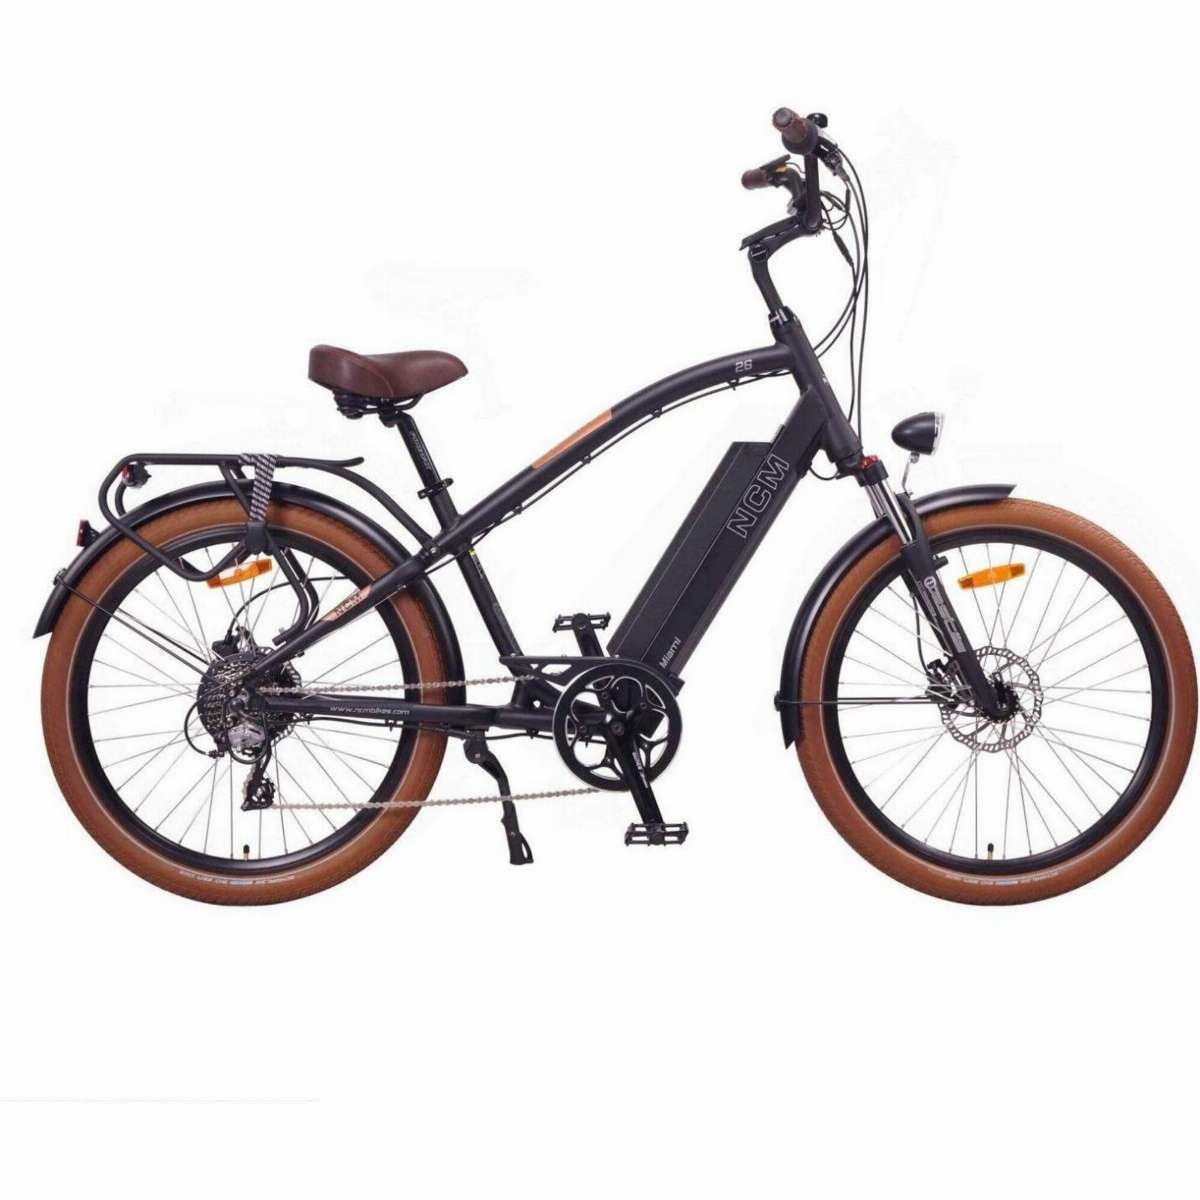 Acheter Poignée d'étau de vélo, conception ergonomique, Angle d